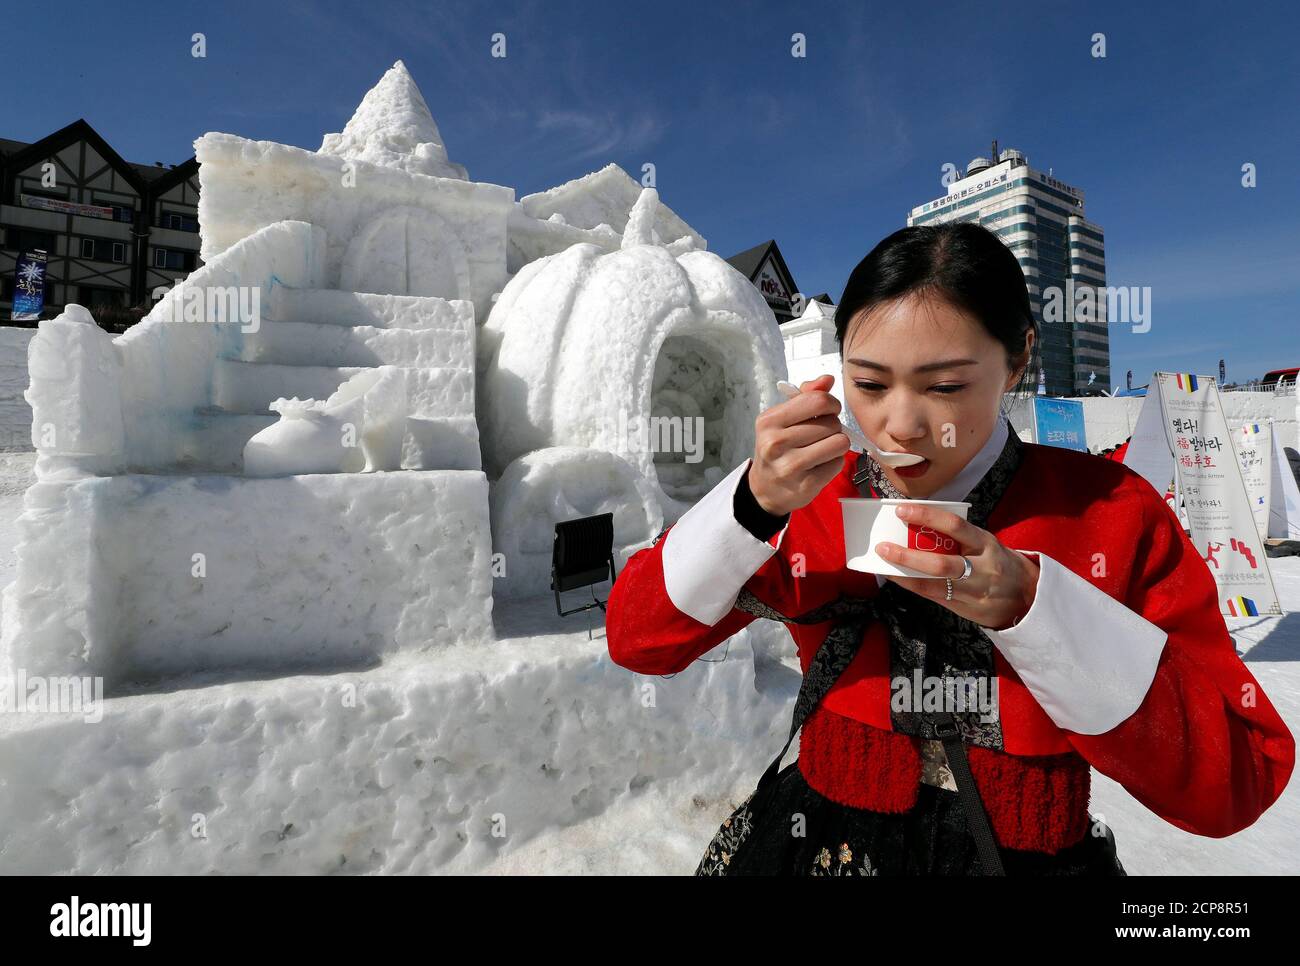 Una mujer vestida con ropa tradicional coreana come de arroz mientras celebra el año Nuevo Lunar entre esculturas de hielo en Pyeongchang, Corea del Sur, 16 febrero de